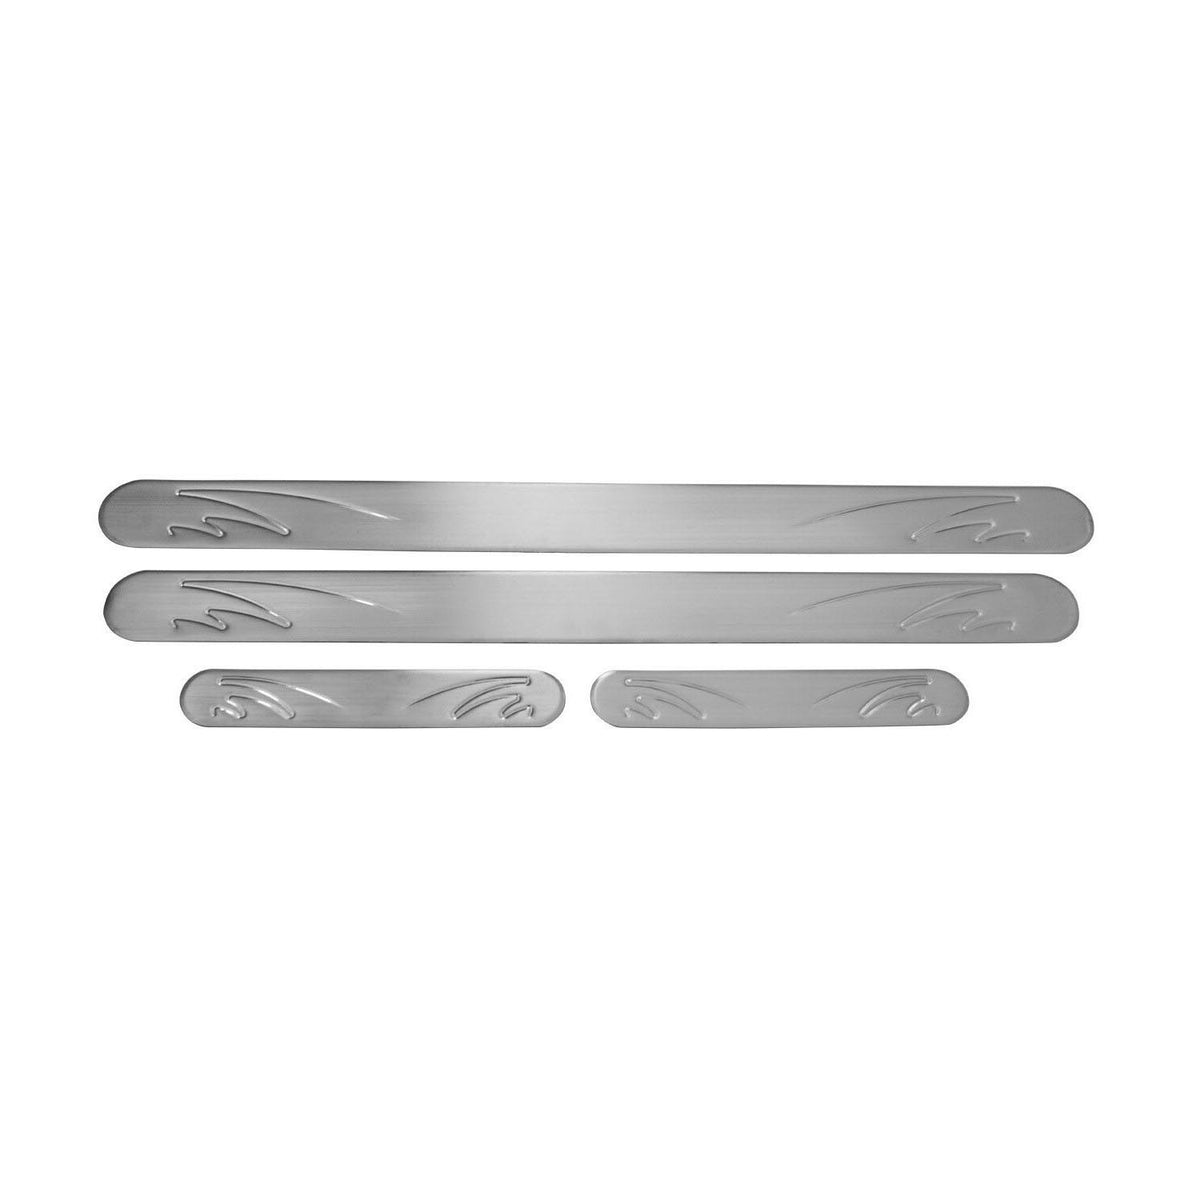 Door sills for Citroen C1 C3 C8 DS4 C-Crosser stainless steel 4x